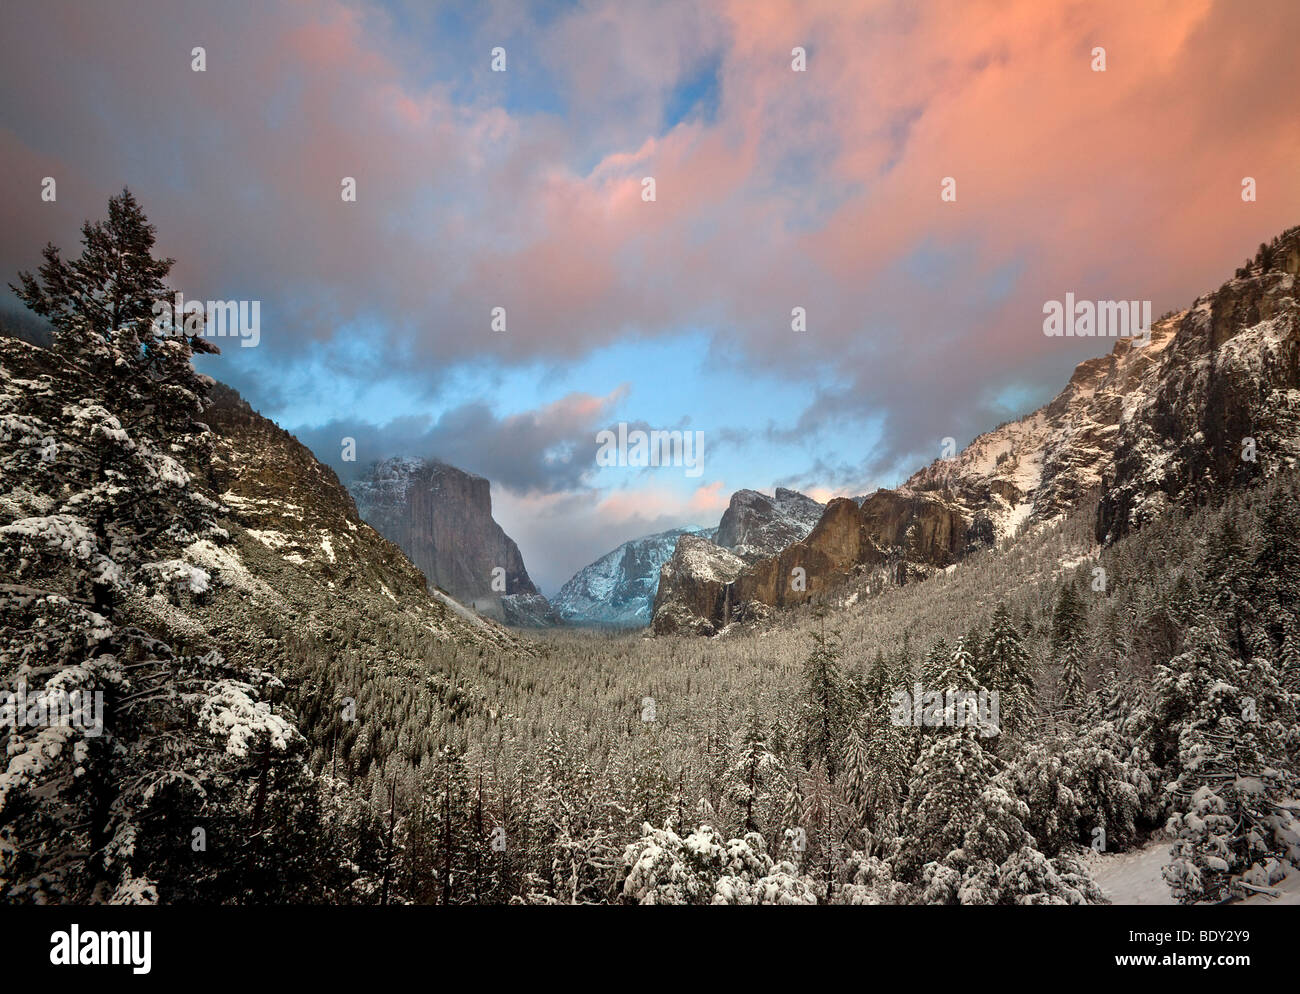 Coucher du soleil réchauffe les cumulus sur la vallée Yosemite pendant une tempête hivernale de compensation. Yosemite National Park, California, USA. Banque D'Images